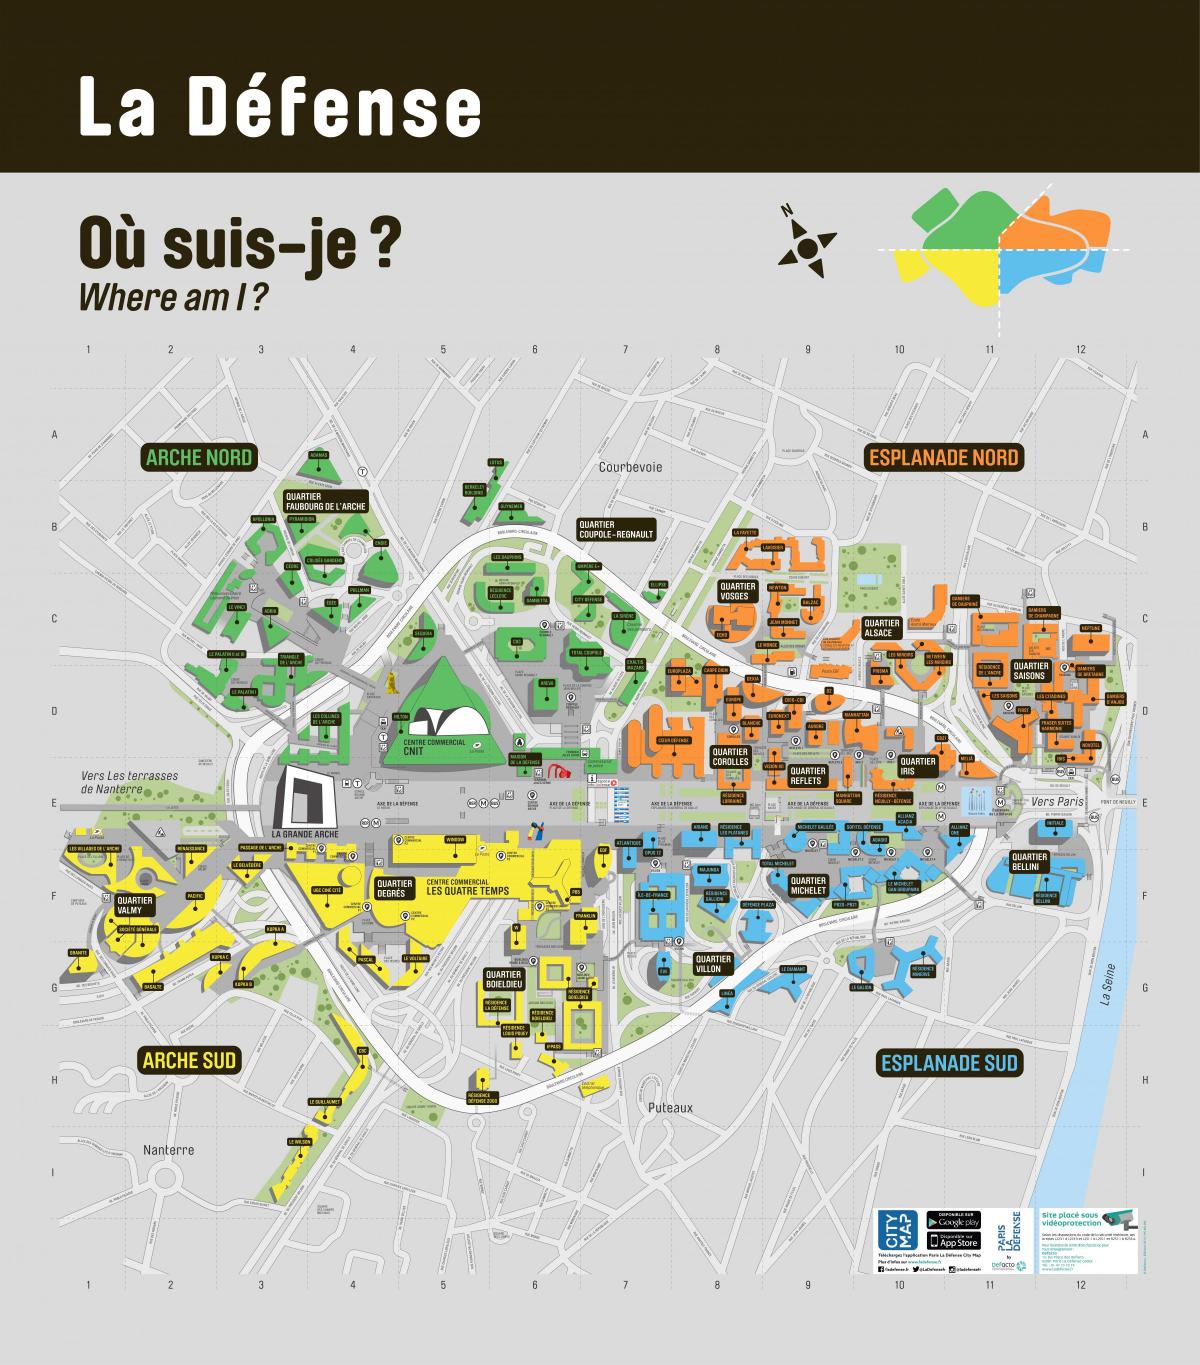 Kort af La Défense